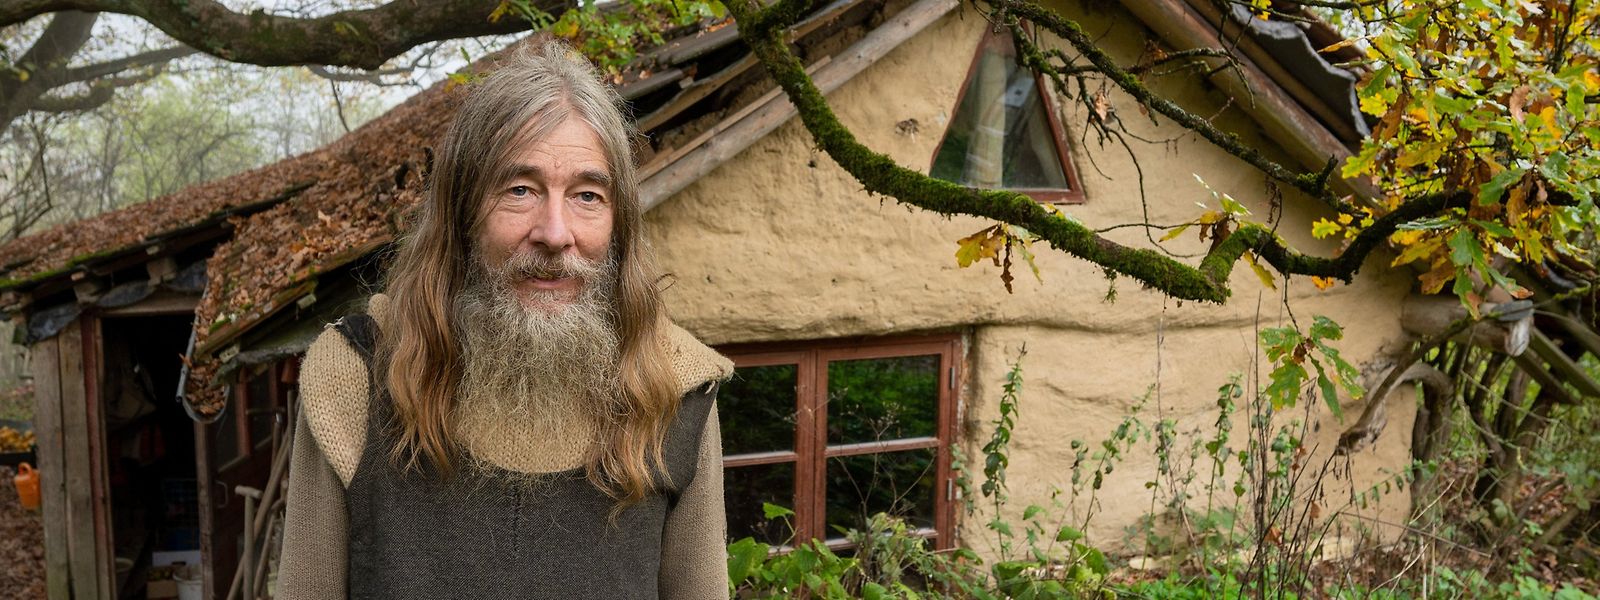 Friedmunt Sonnemann vive há mais de três décadas numa cabana construída na floresta.